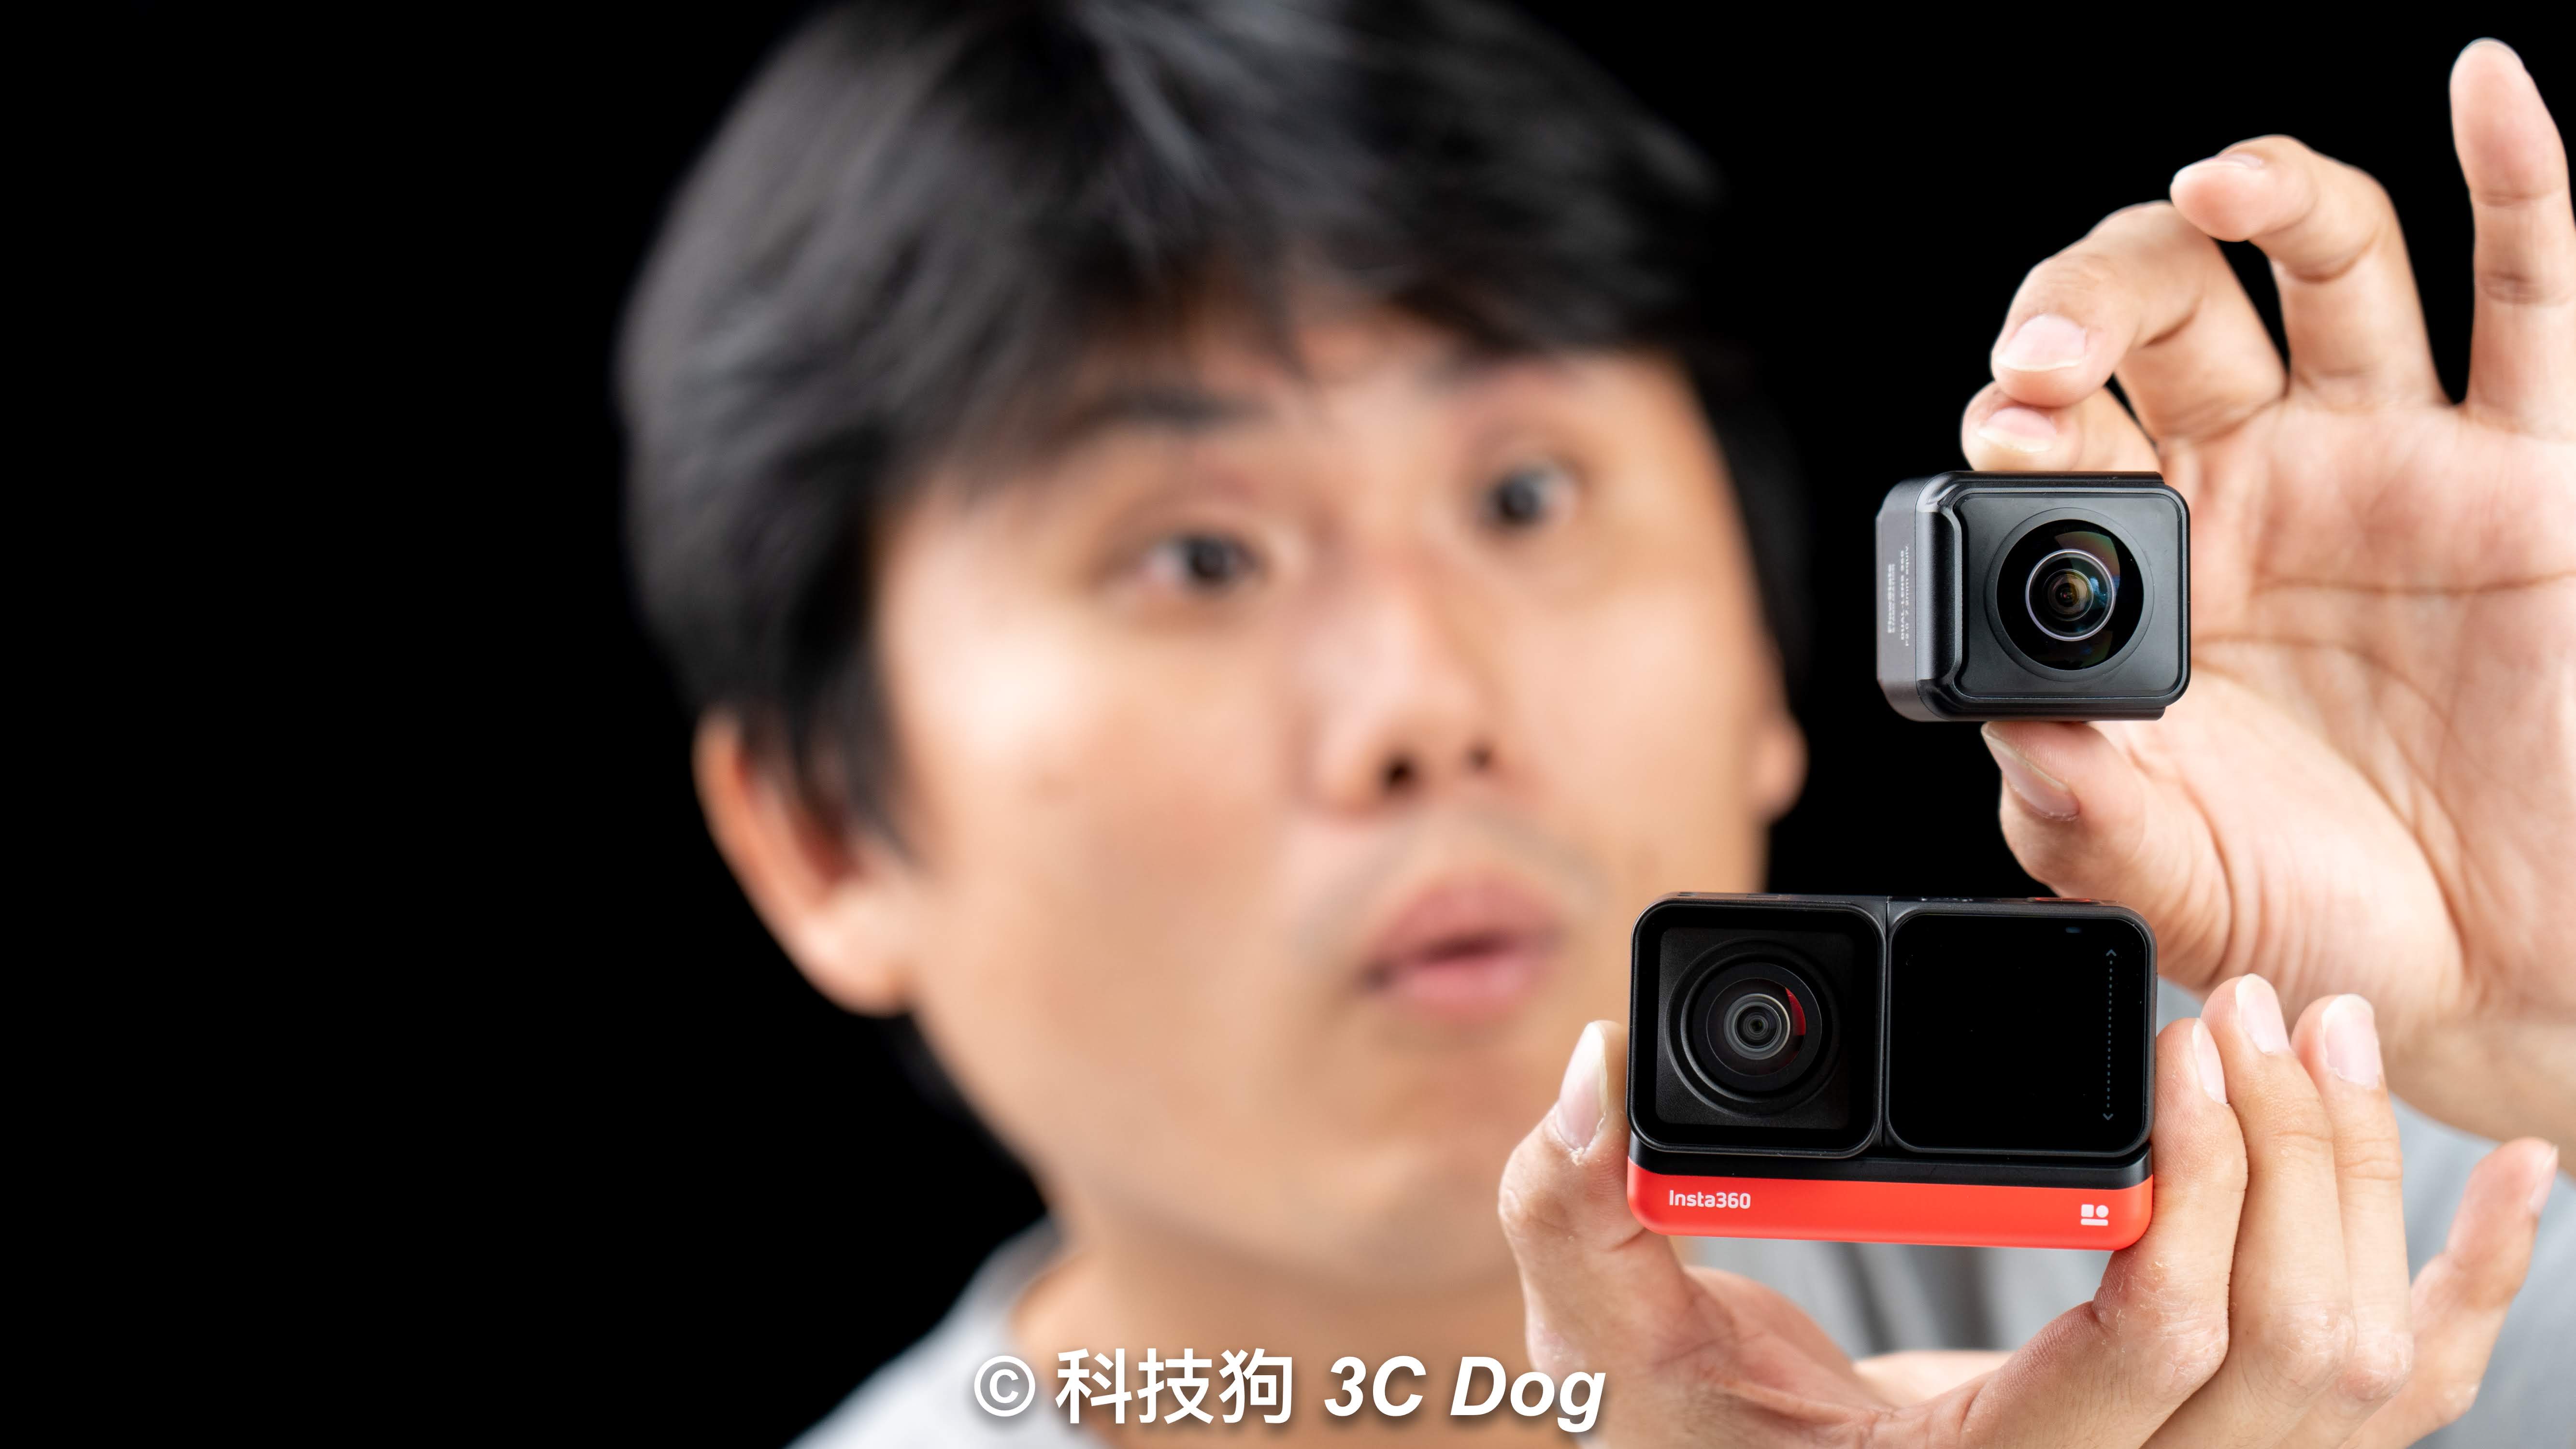 【搶先開箱】運動相機也能換鏡頭！Insta360 ONE R 新品發表，結合「4K 廣角、全景拍攝、1 英吋 5.3K 拍攝鏡頭」想用哪個鏡頭拍？直接換就好！ ﻿ - 4K 相機, Insta, insta360, Insta360 ONE R, ONE R, 全景相機, 運動相機 - 科技狗 3C DOG